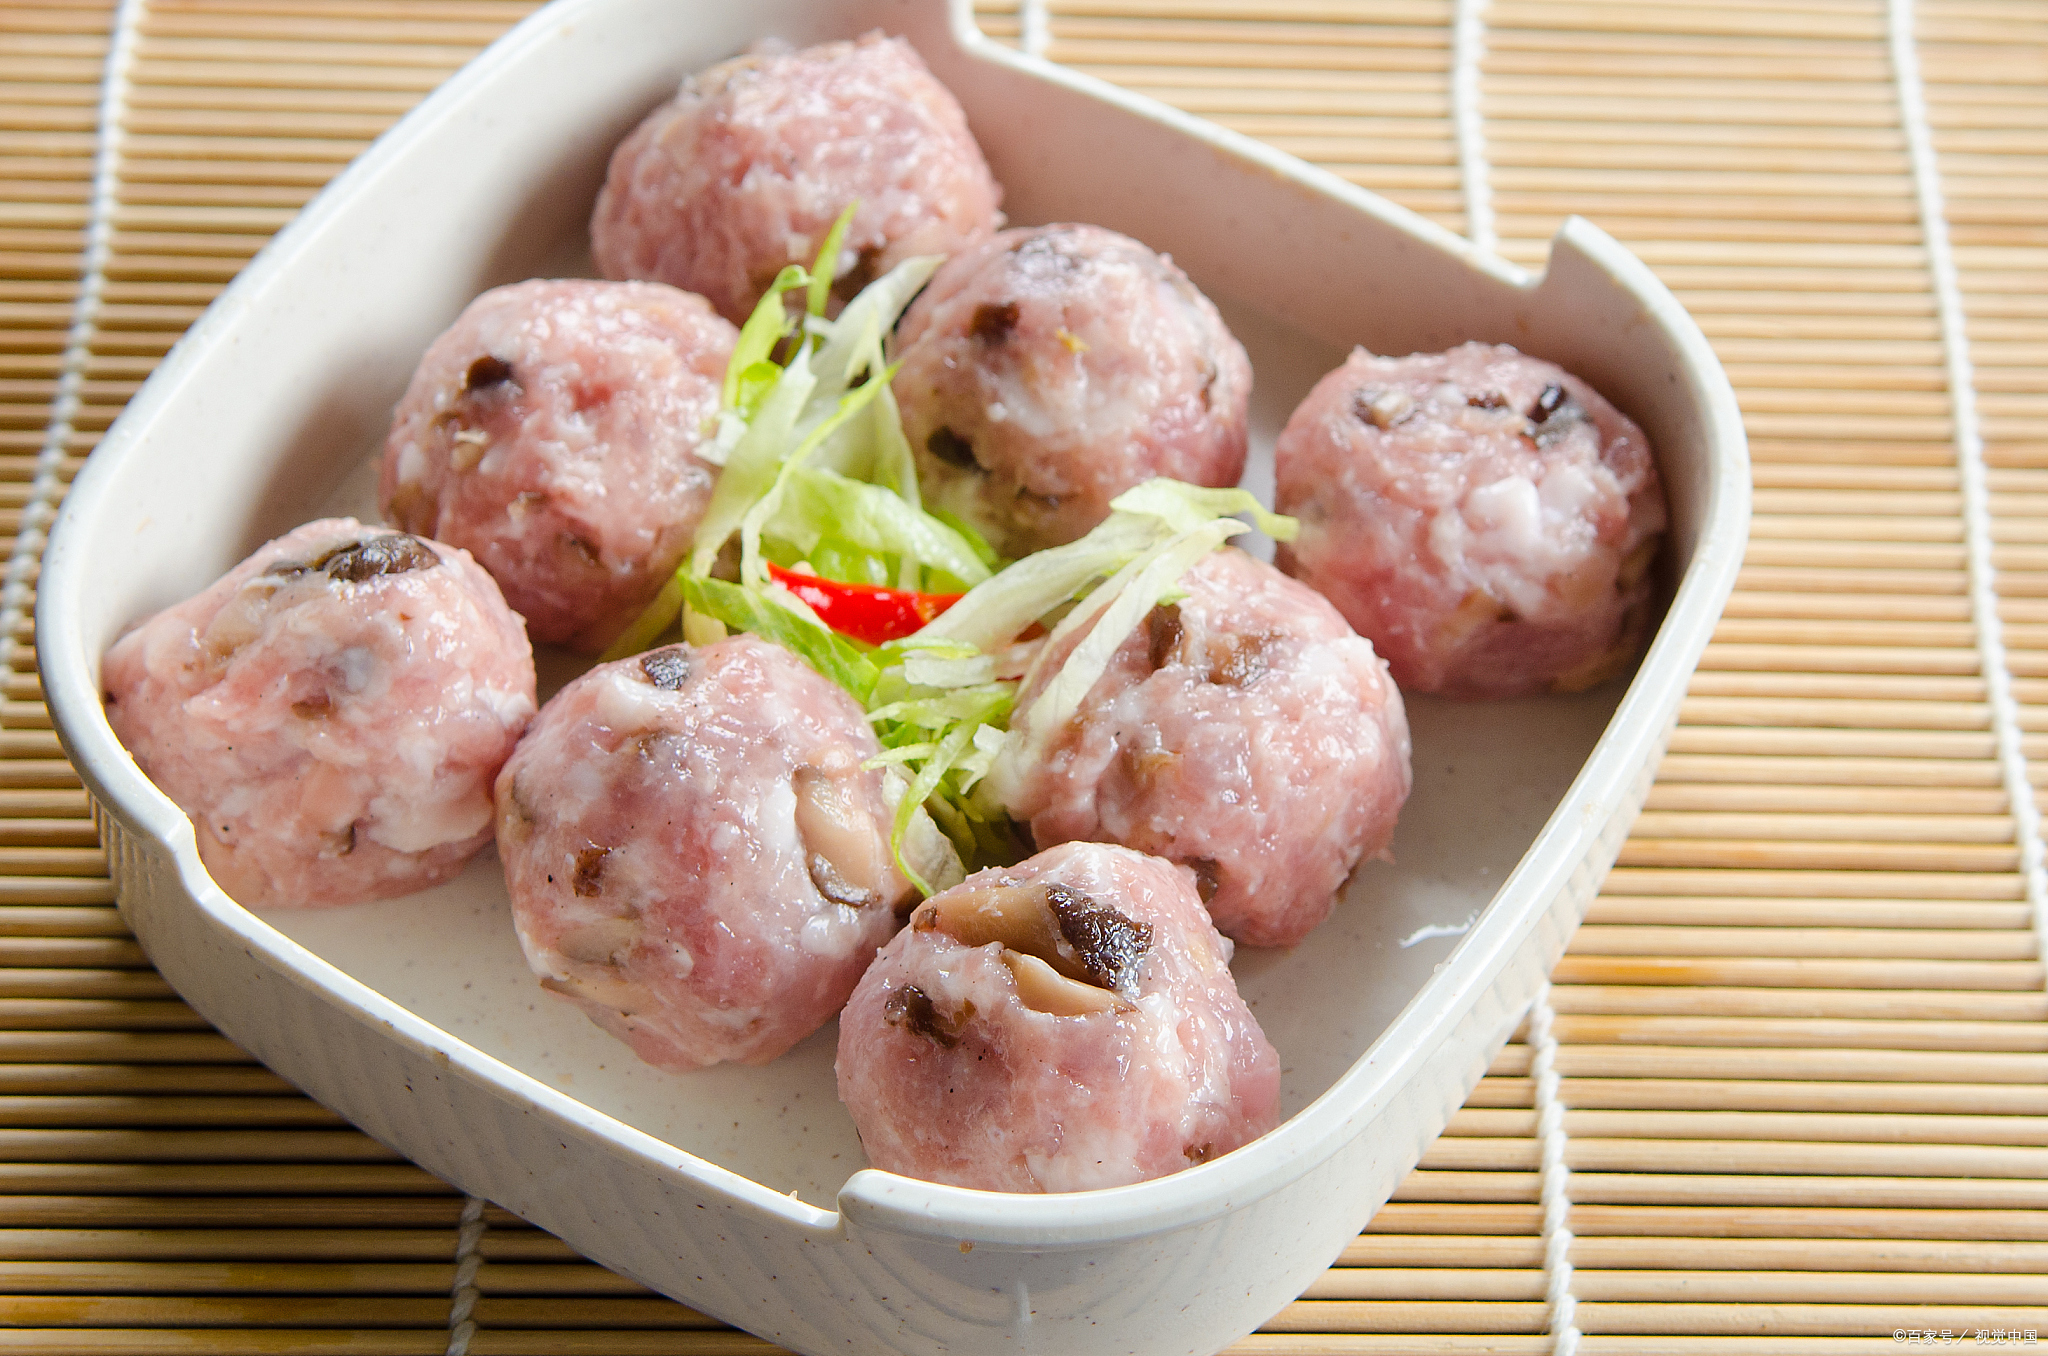 潮汕虾丸是广东潮汕地区的传统美食,以鲜虾为主要原料,加入适量的淀粉